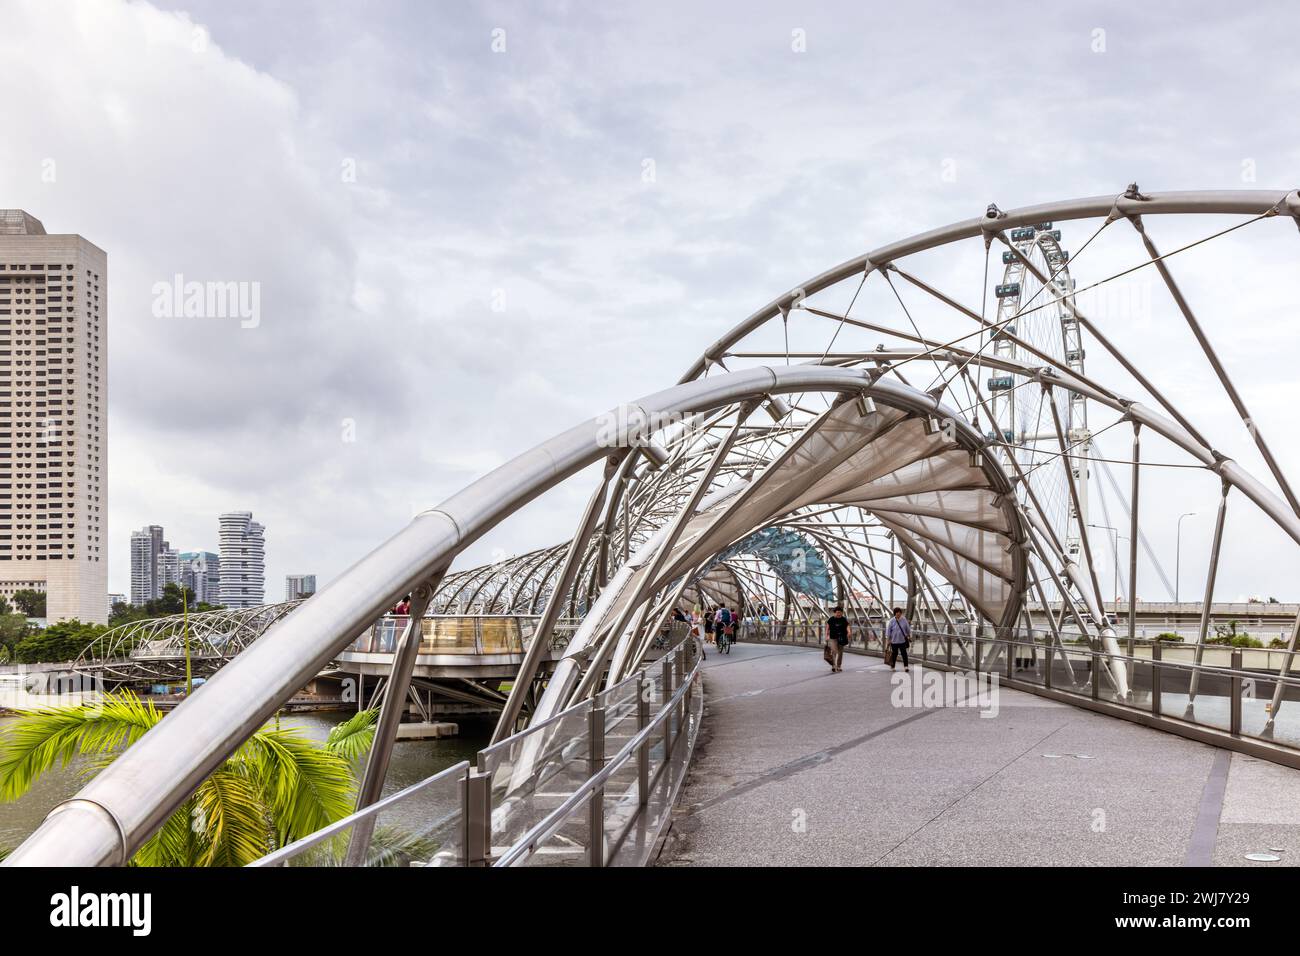 Le pont Helix, reliant l'Esplanade avec les Shoppes à Marina Bay Sands, Marina Bay, Singapour Banque D'Images